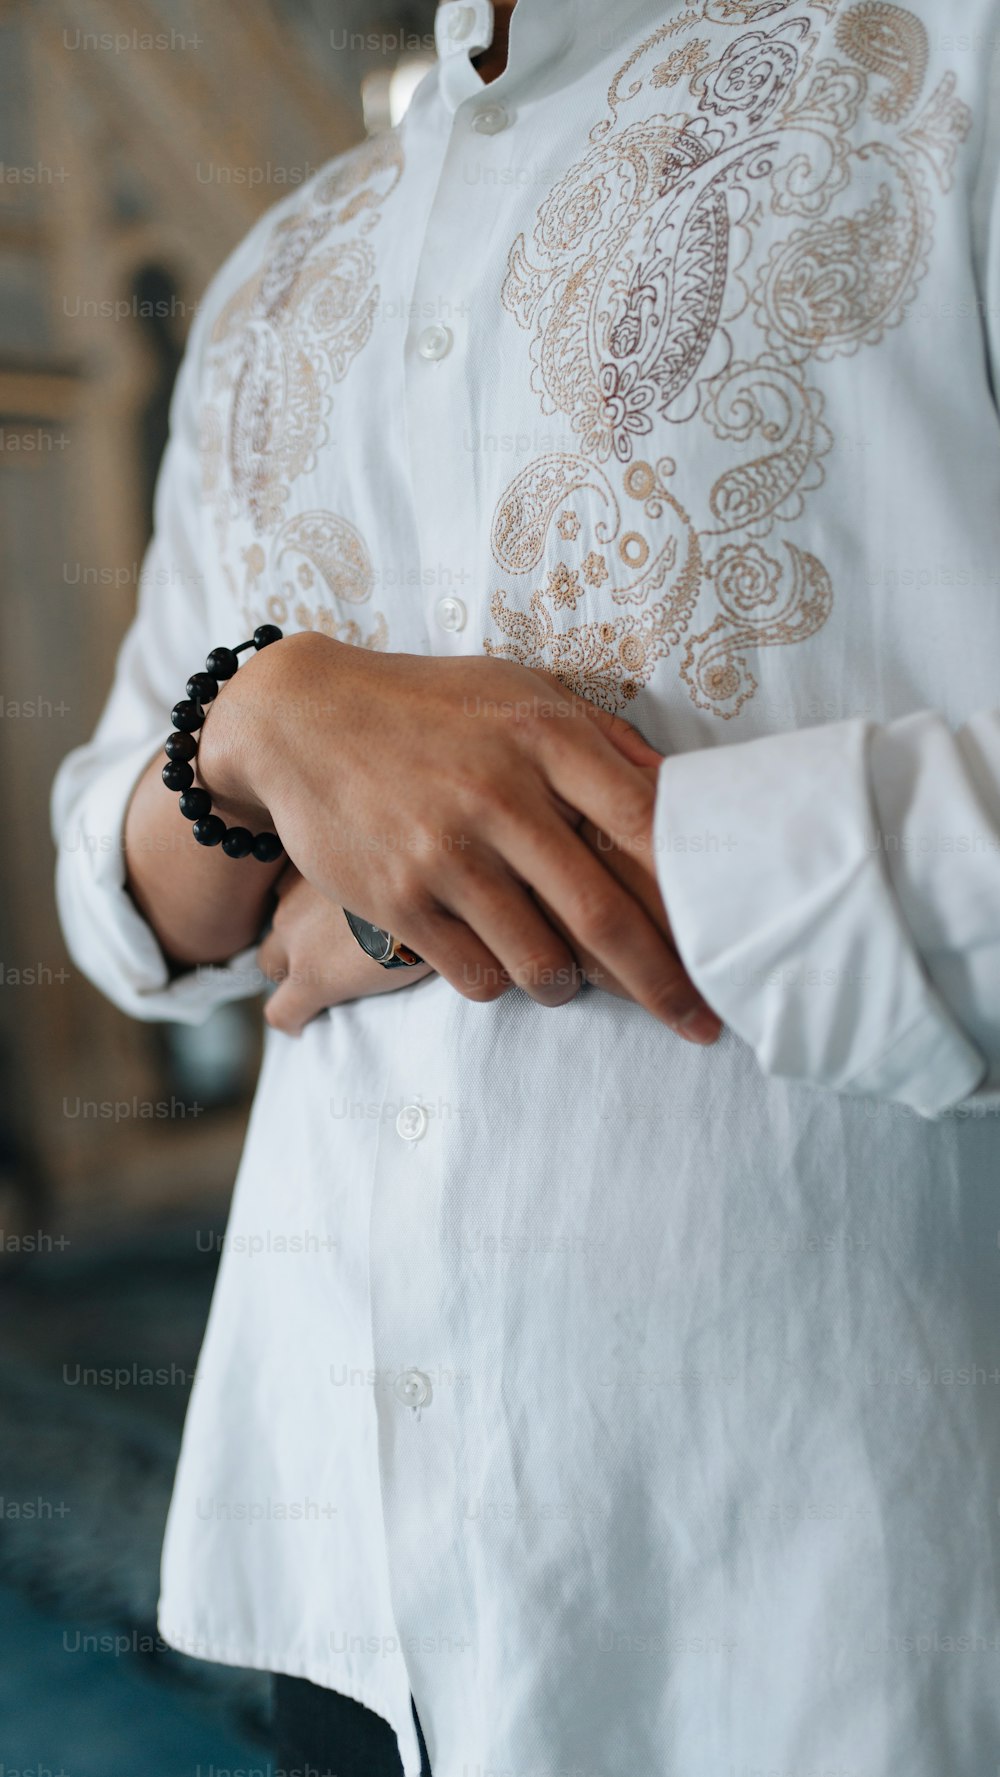 eine Person, die ein weißes Hemd und ein Perlenarmband trägt